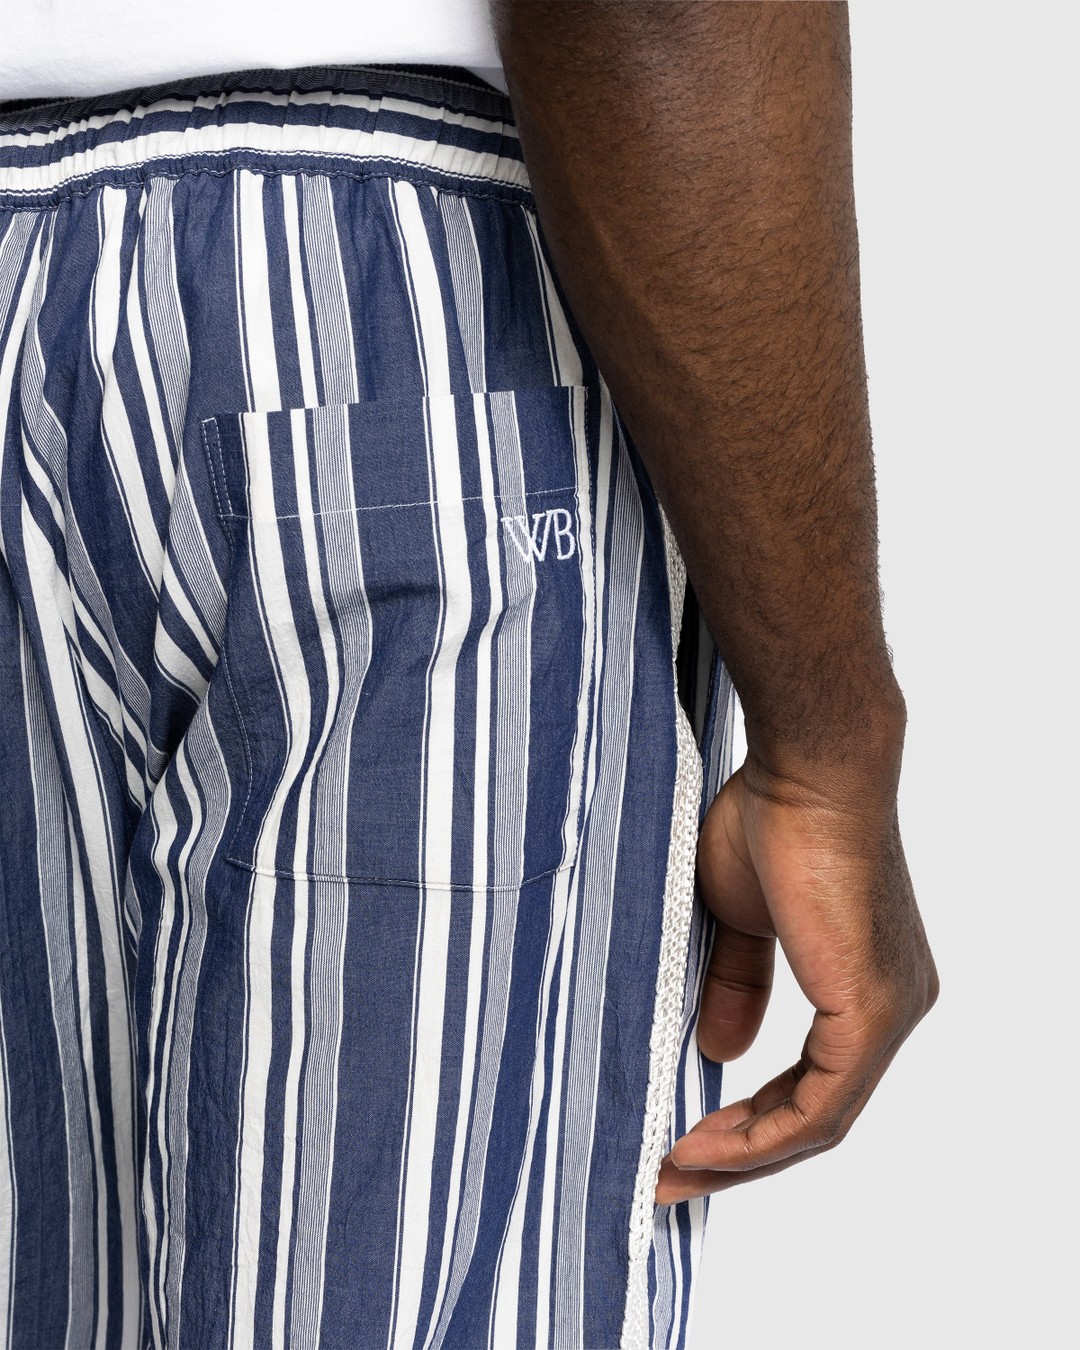 Wales Bonner – Soul Pyjama Trousers - Loungewear - Blue - Image 5